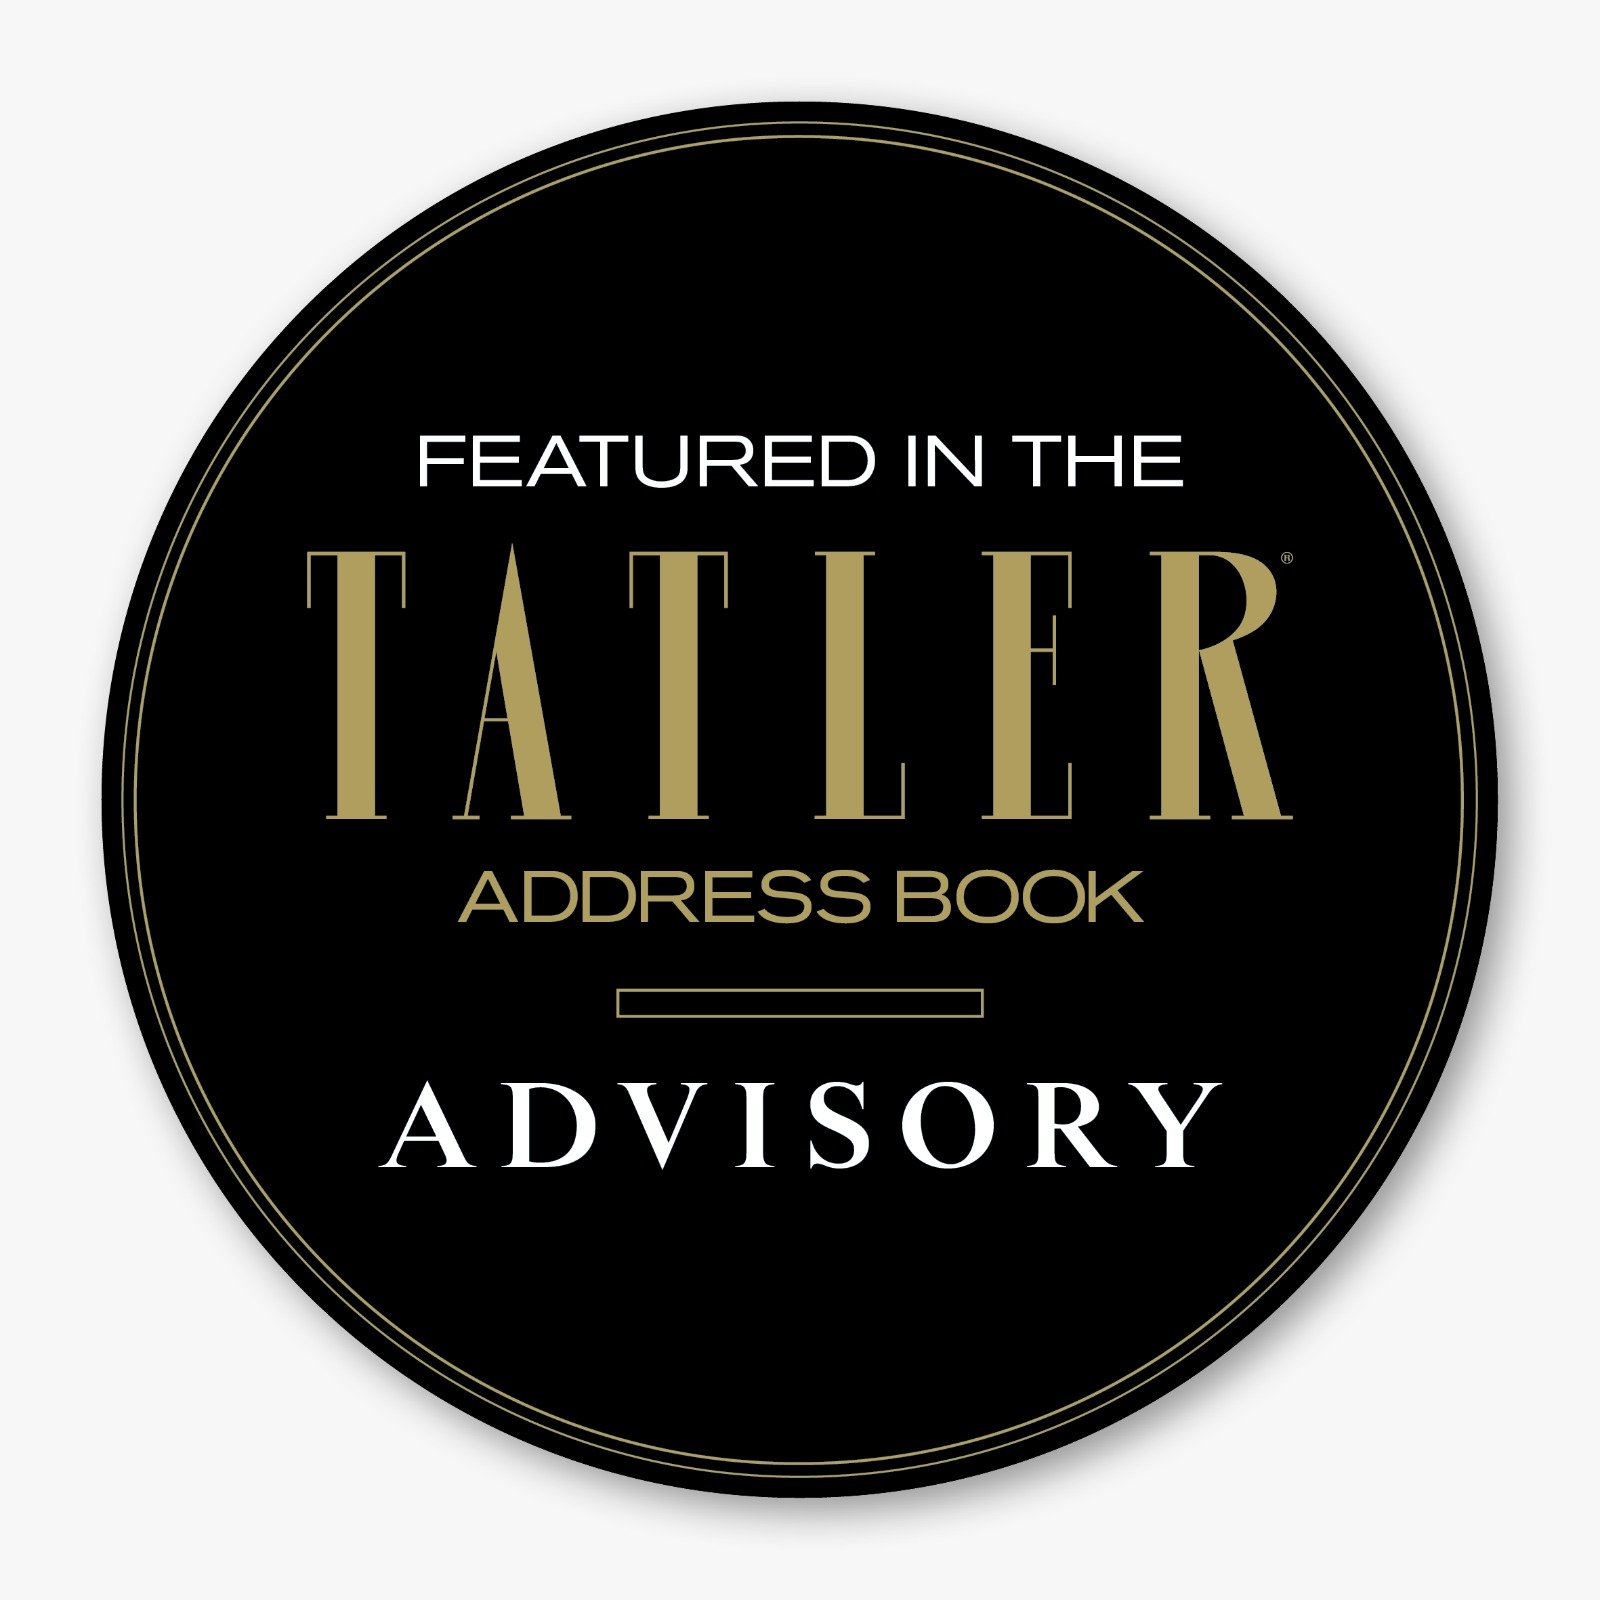 Tatler Advisory logo 2.jpg